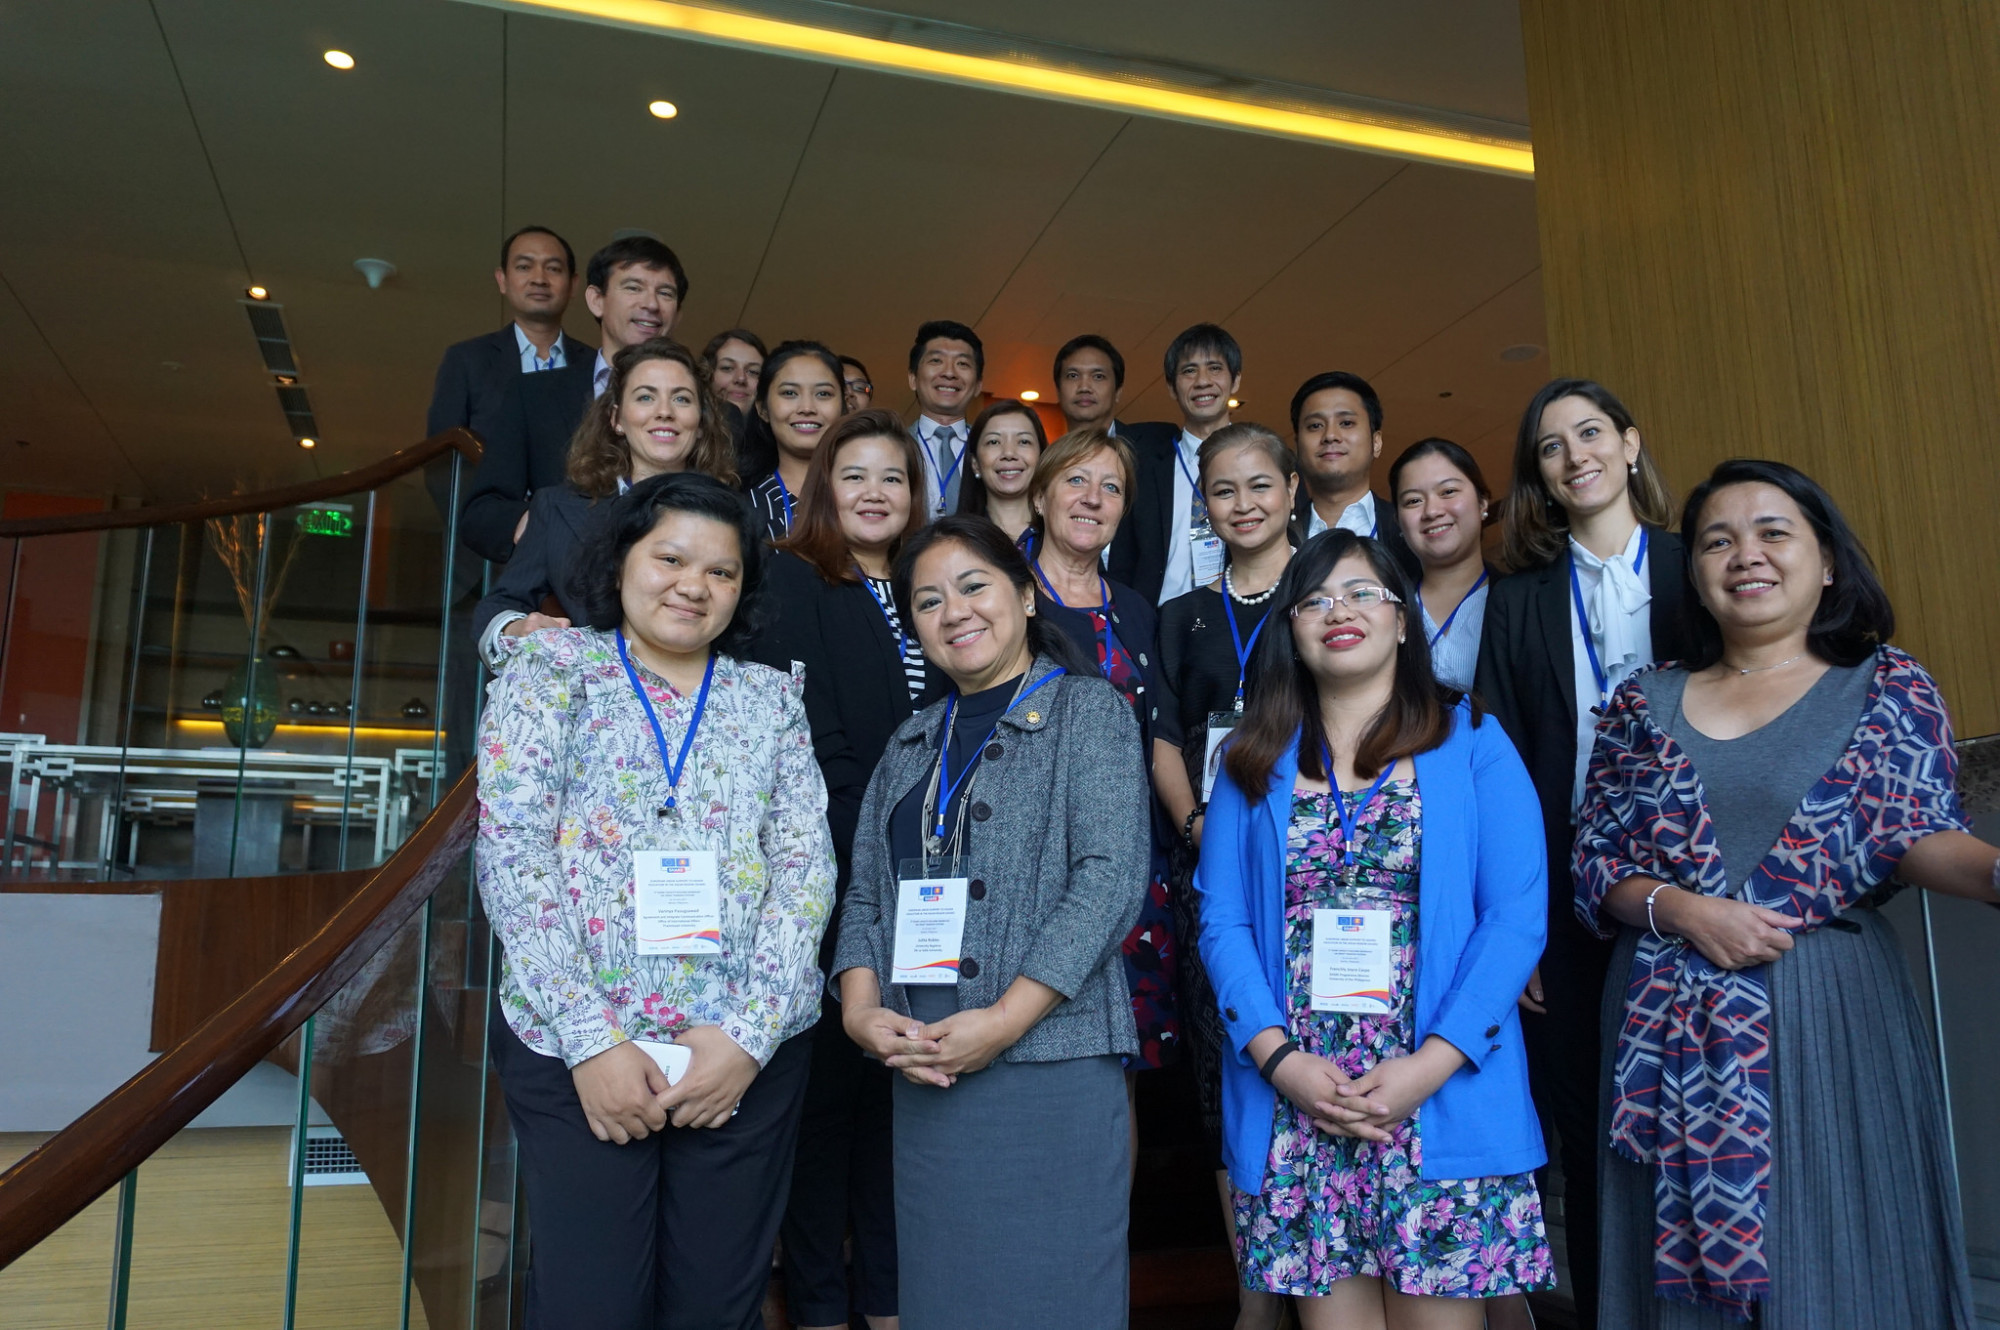 Nhiều học giả từ các quốc gia thuộc khu vực ĐNA đã nhận được sự hỗ trợ phát triển chuyên môn từ chương trình SHARE do EU tài trợ - Ảnh: SHARE EU ASEAN